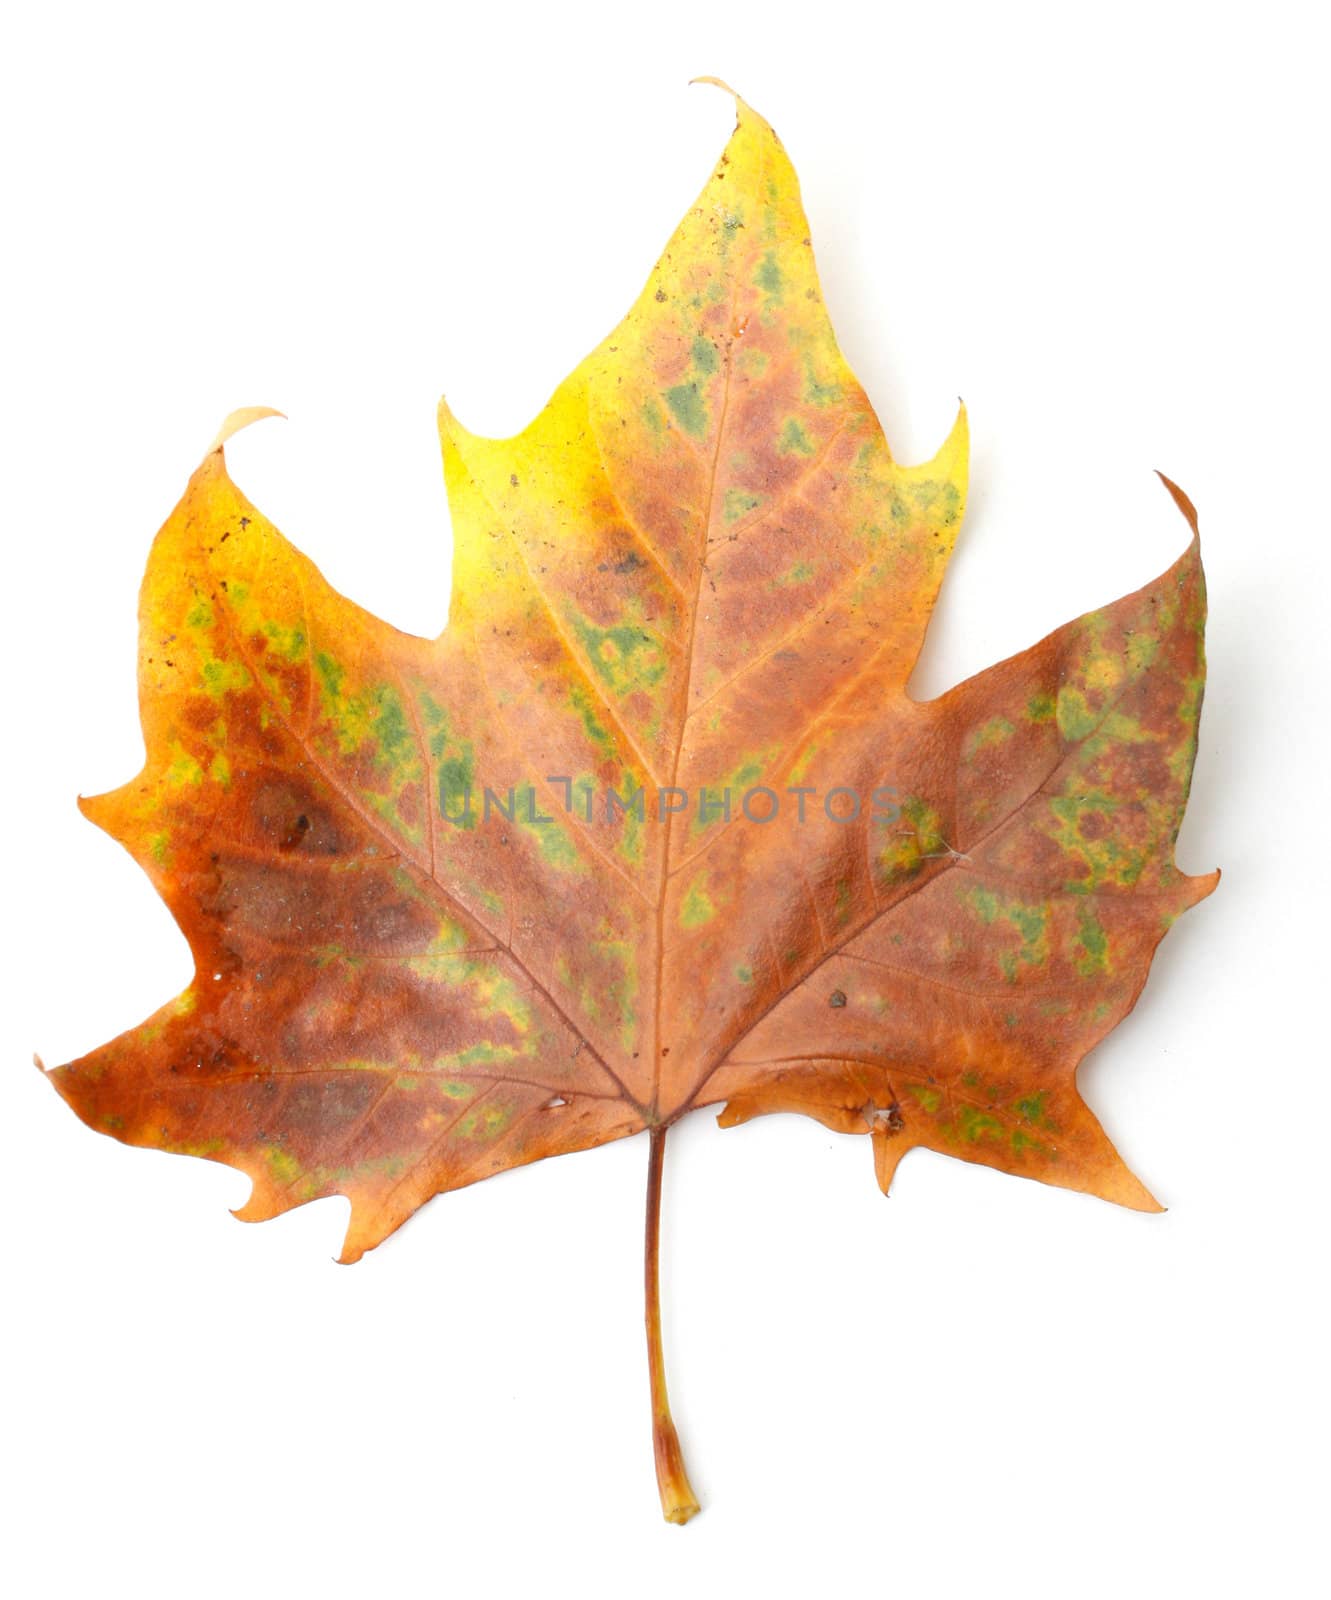 Maple leaf by leeser